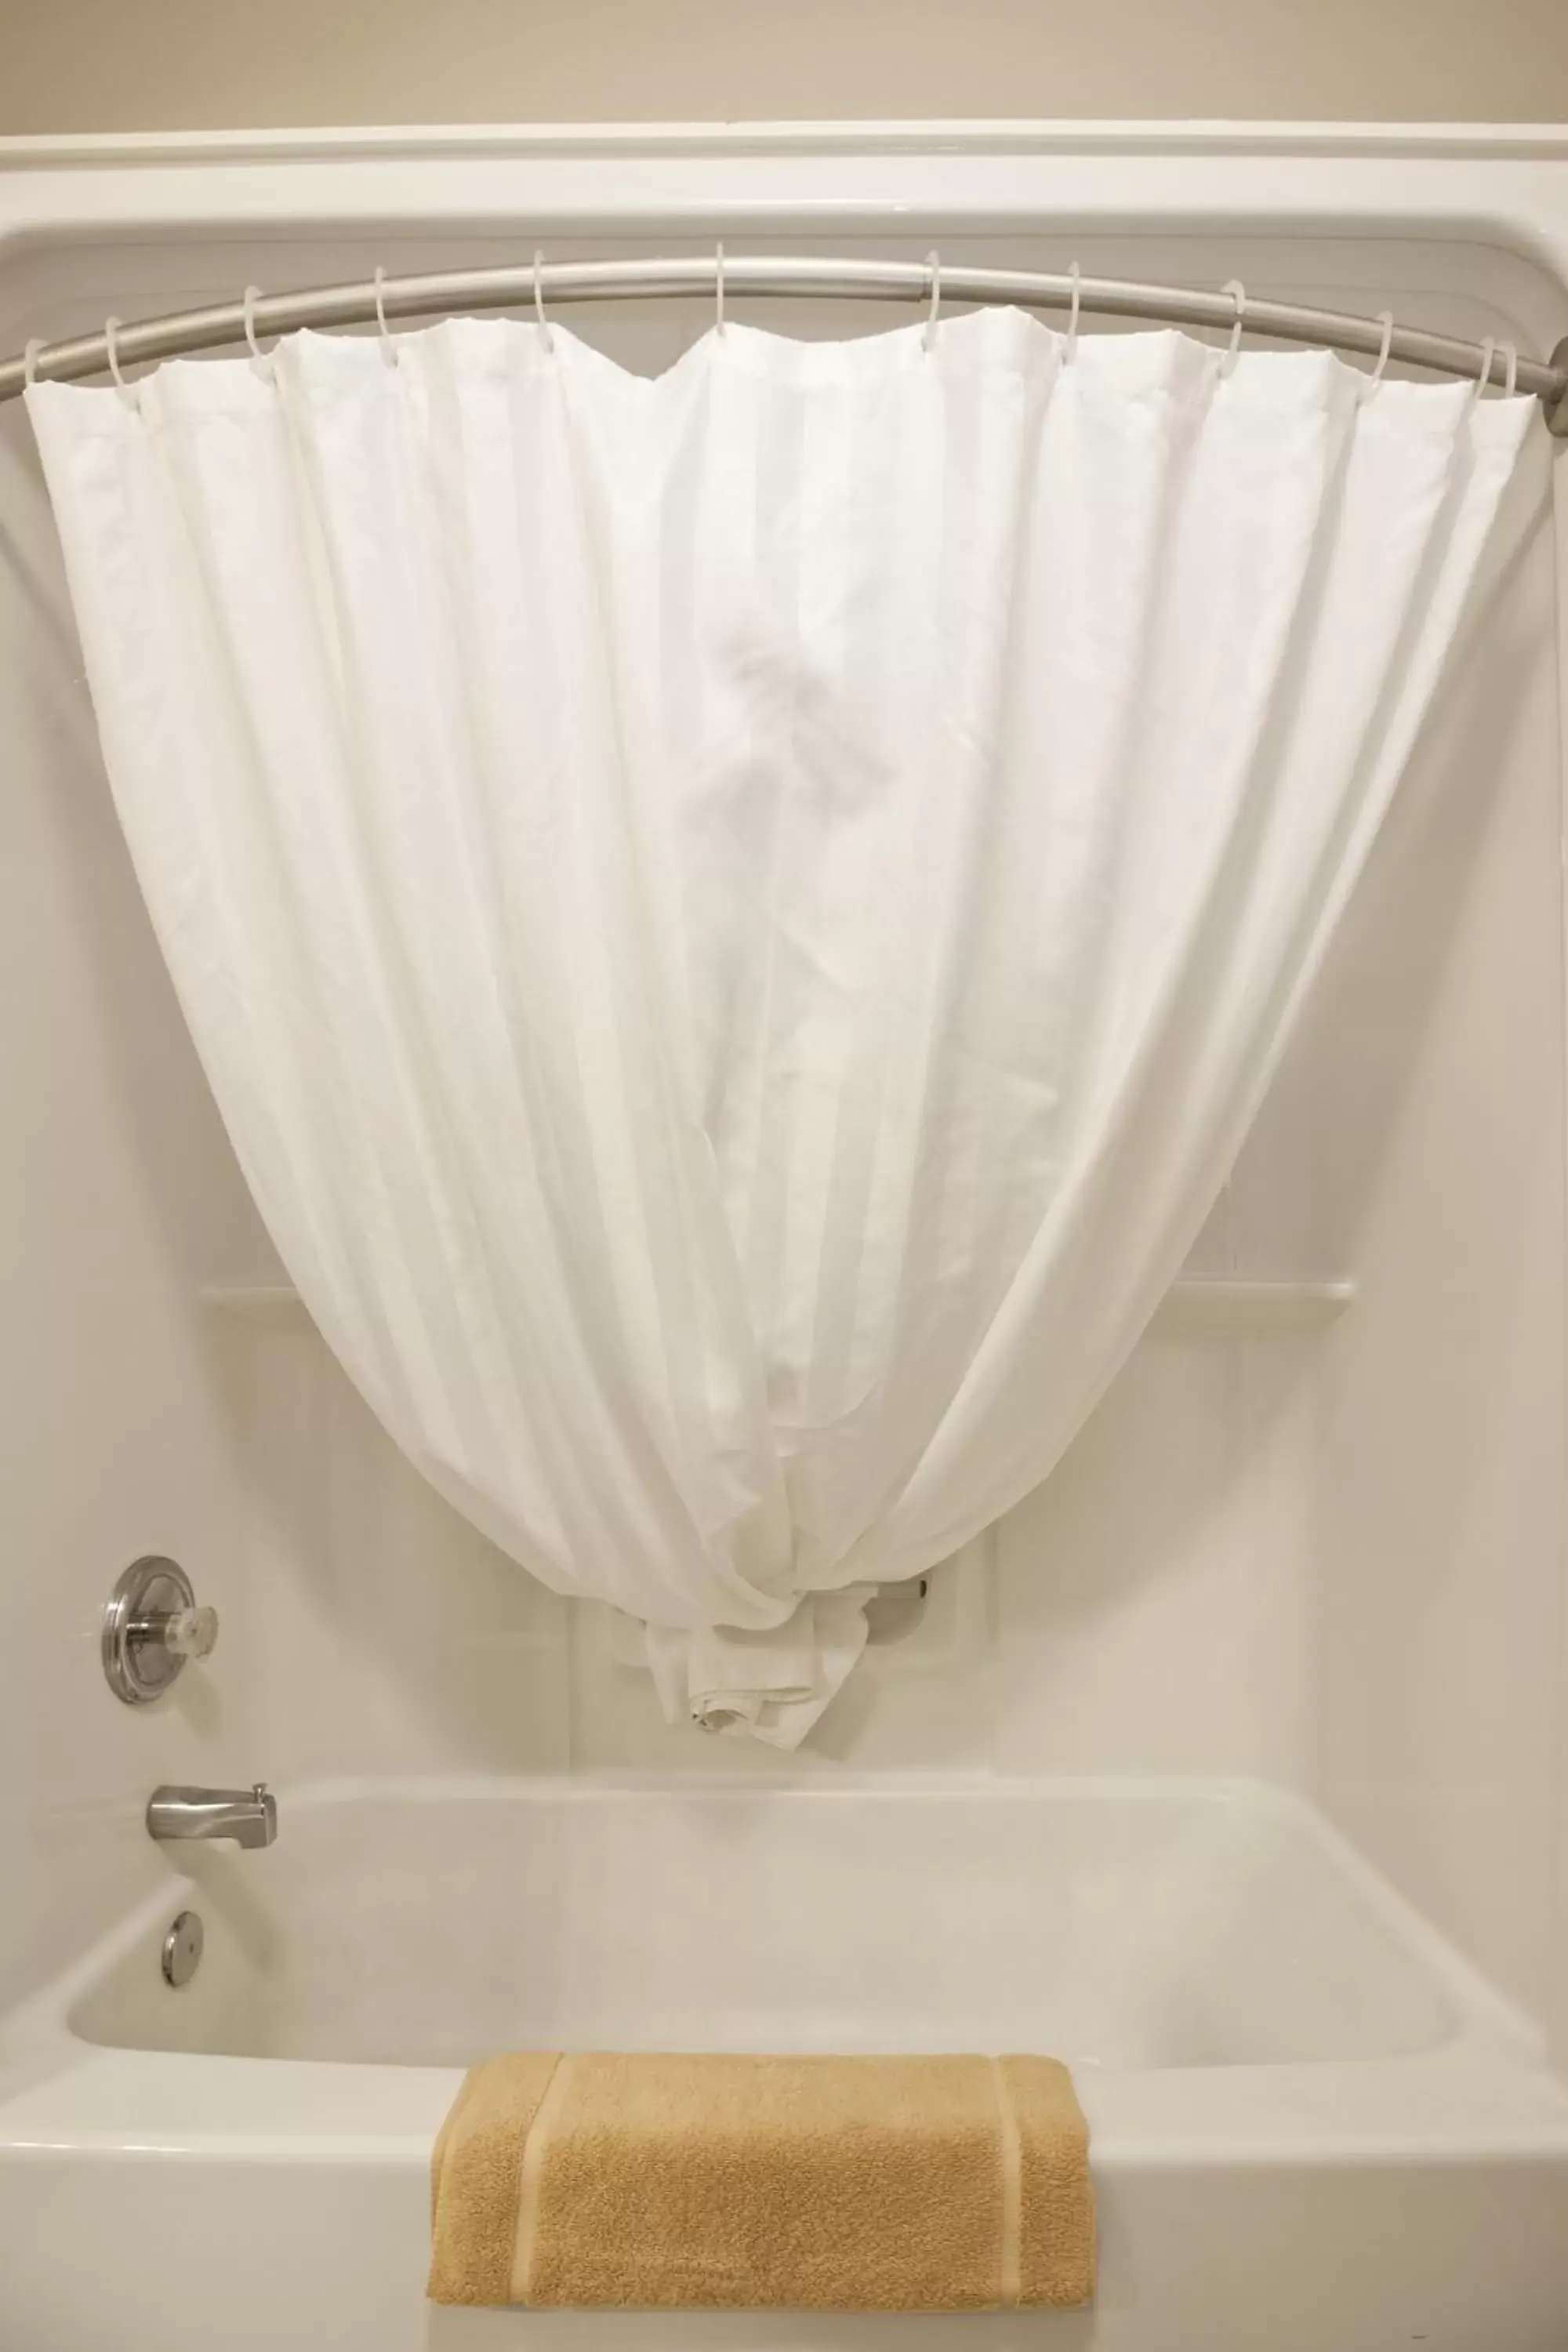 Shower, Bathroom in Bow River Inn